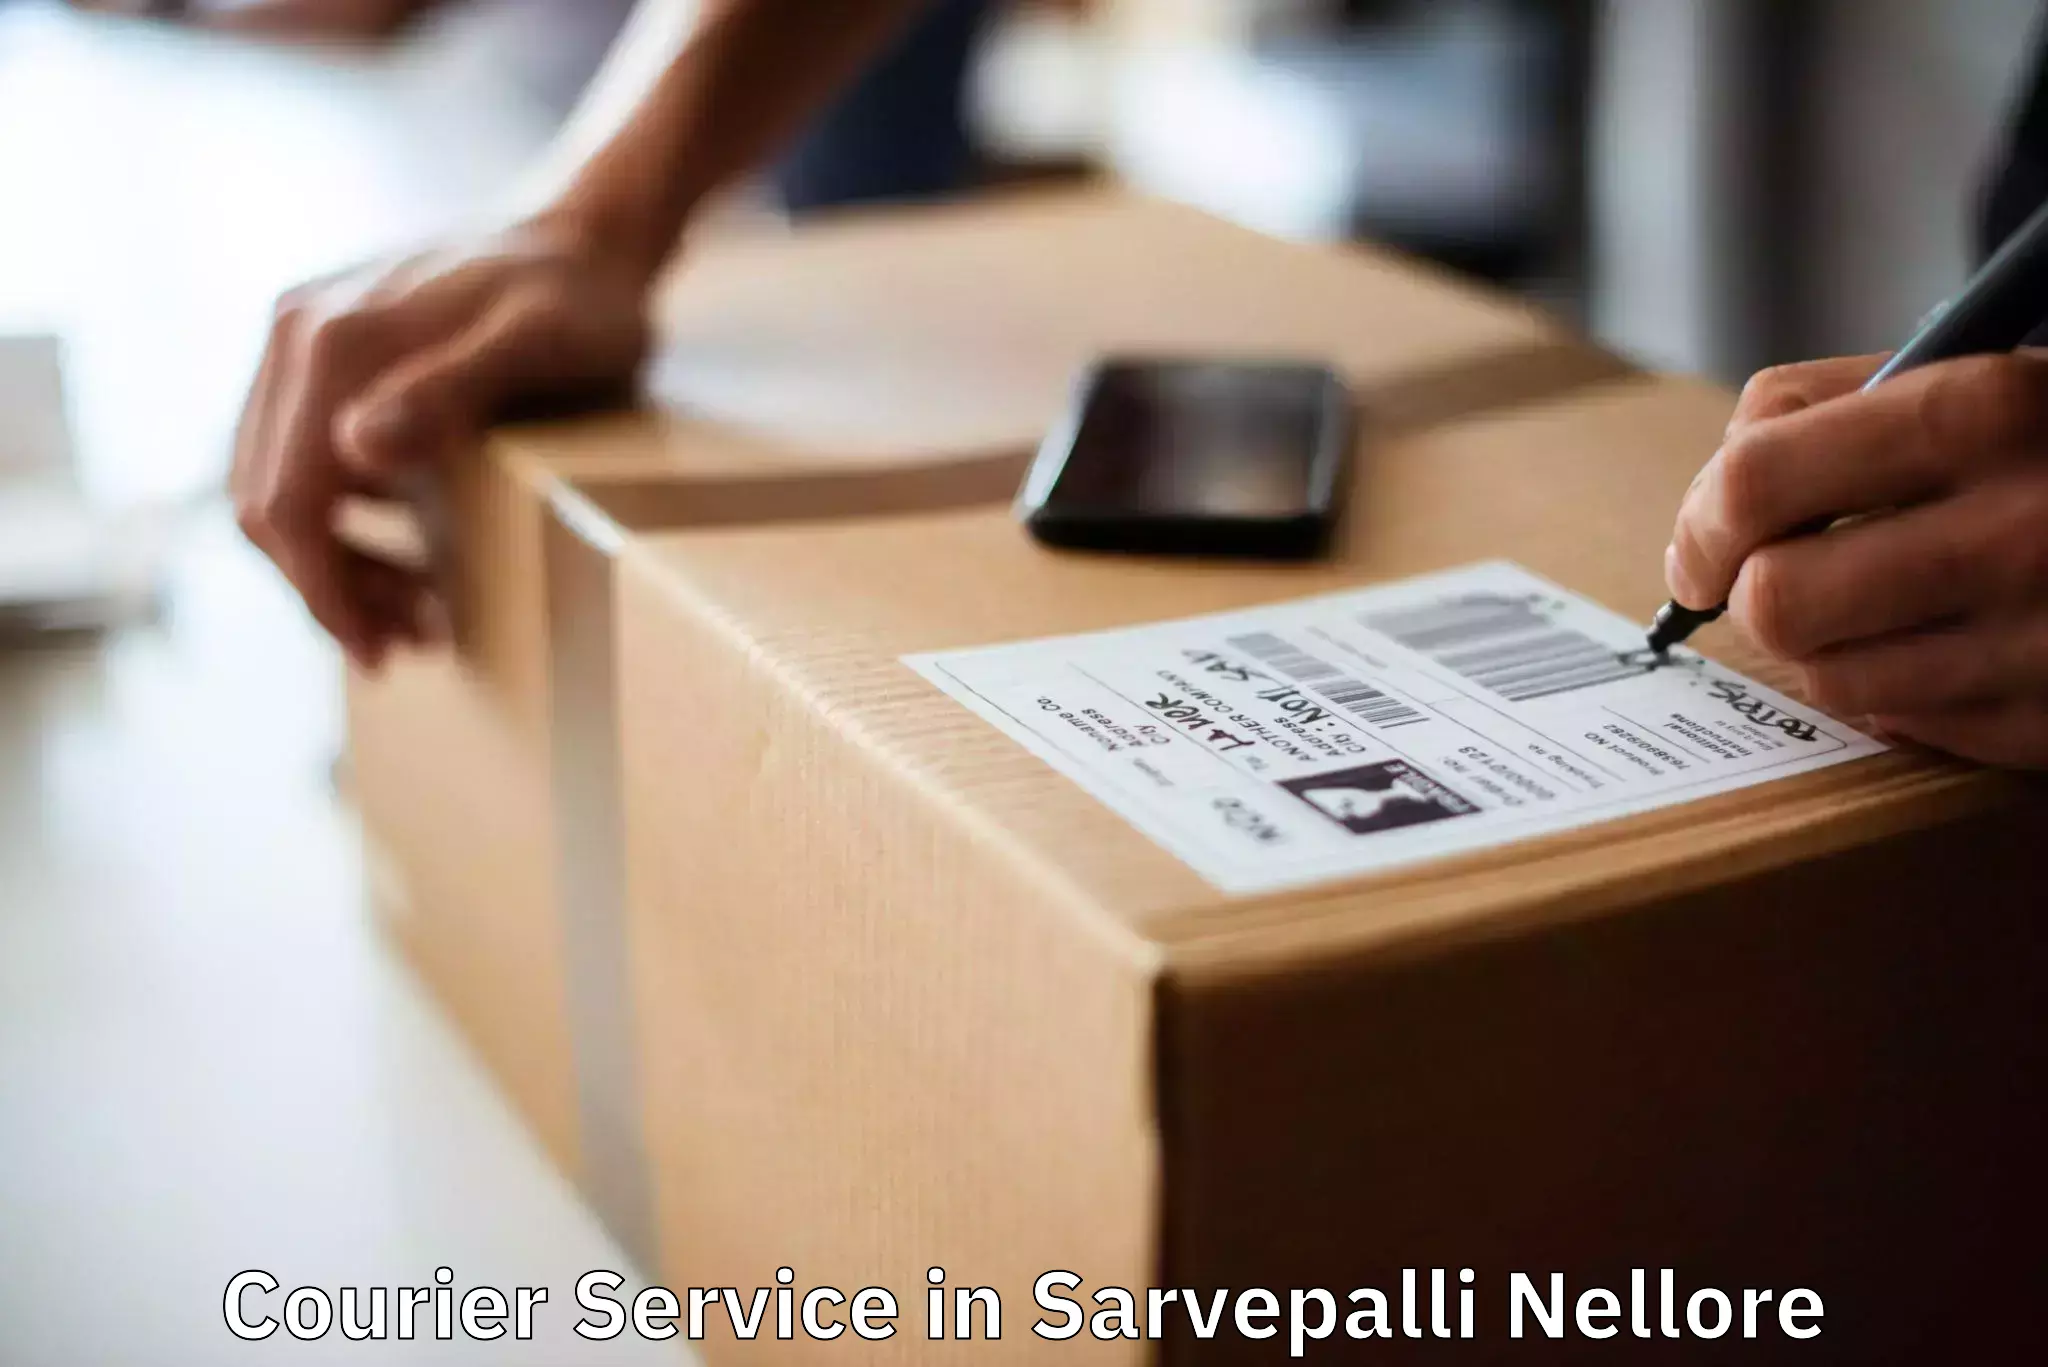 Domestic delivery options in Sarvepalli Nellore